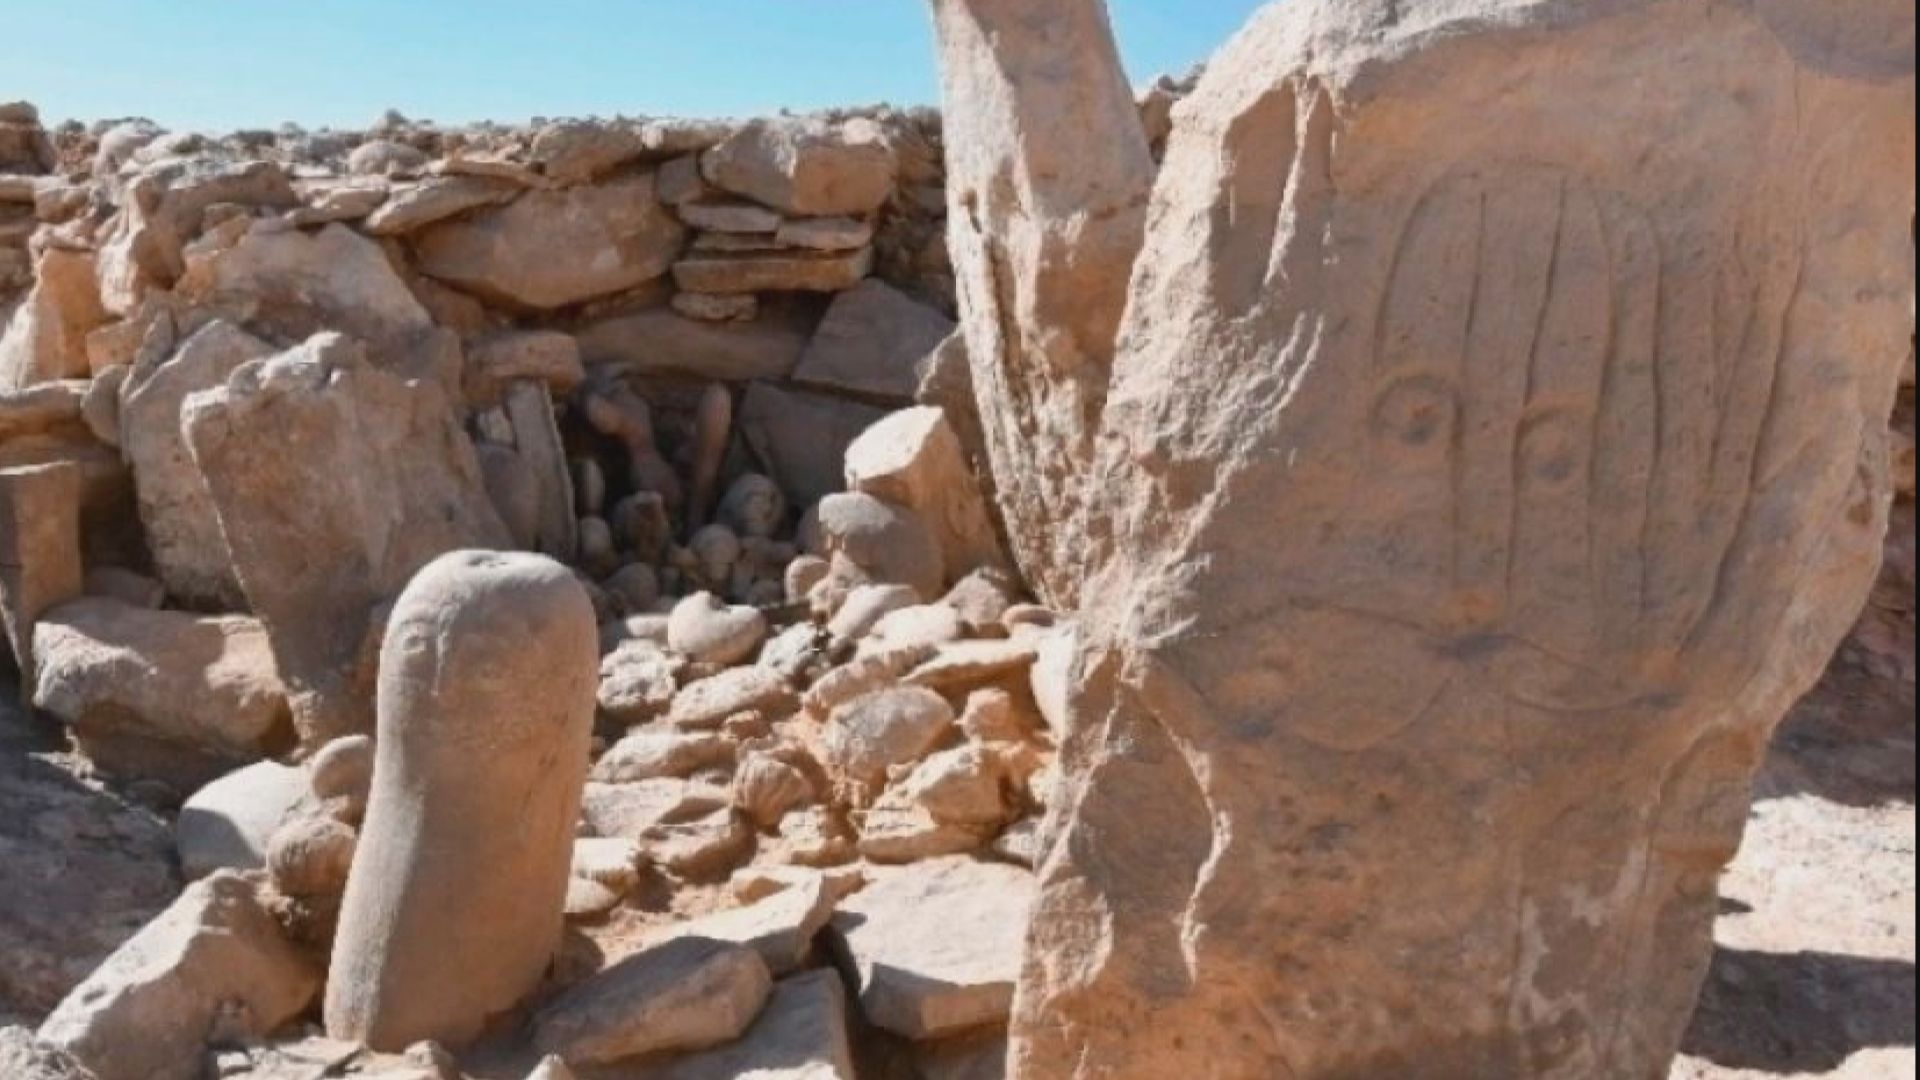 【環球薈報】約旦東部沙漠發現新石器時代神廟遺址